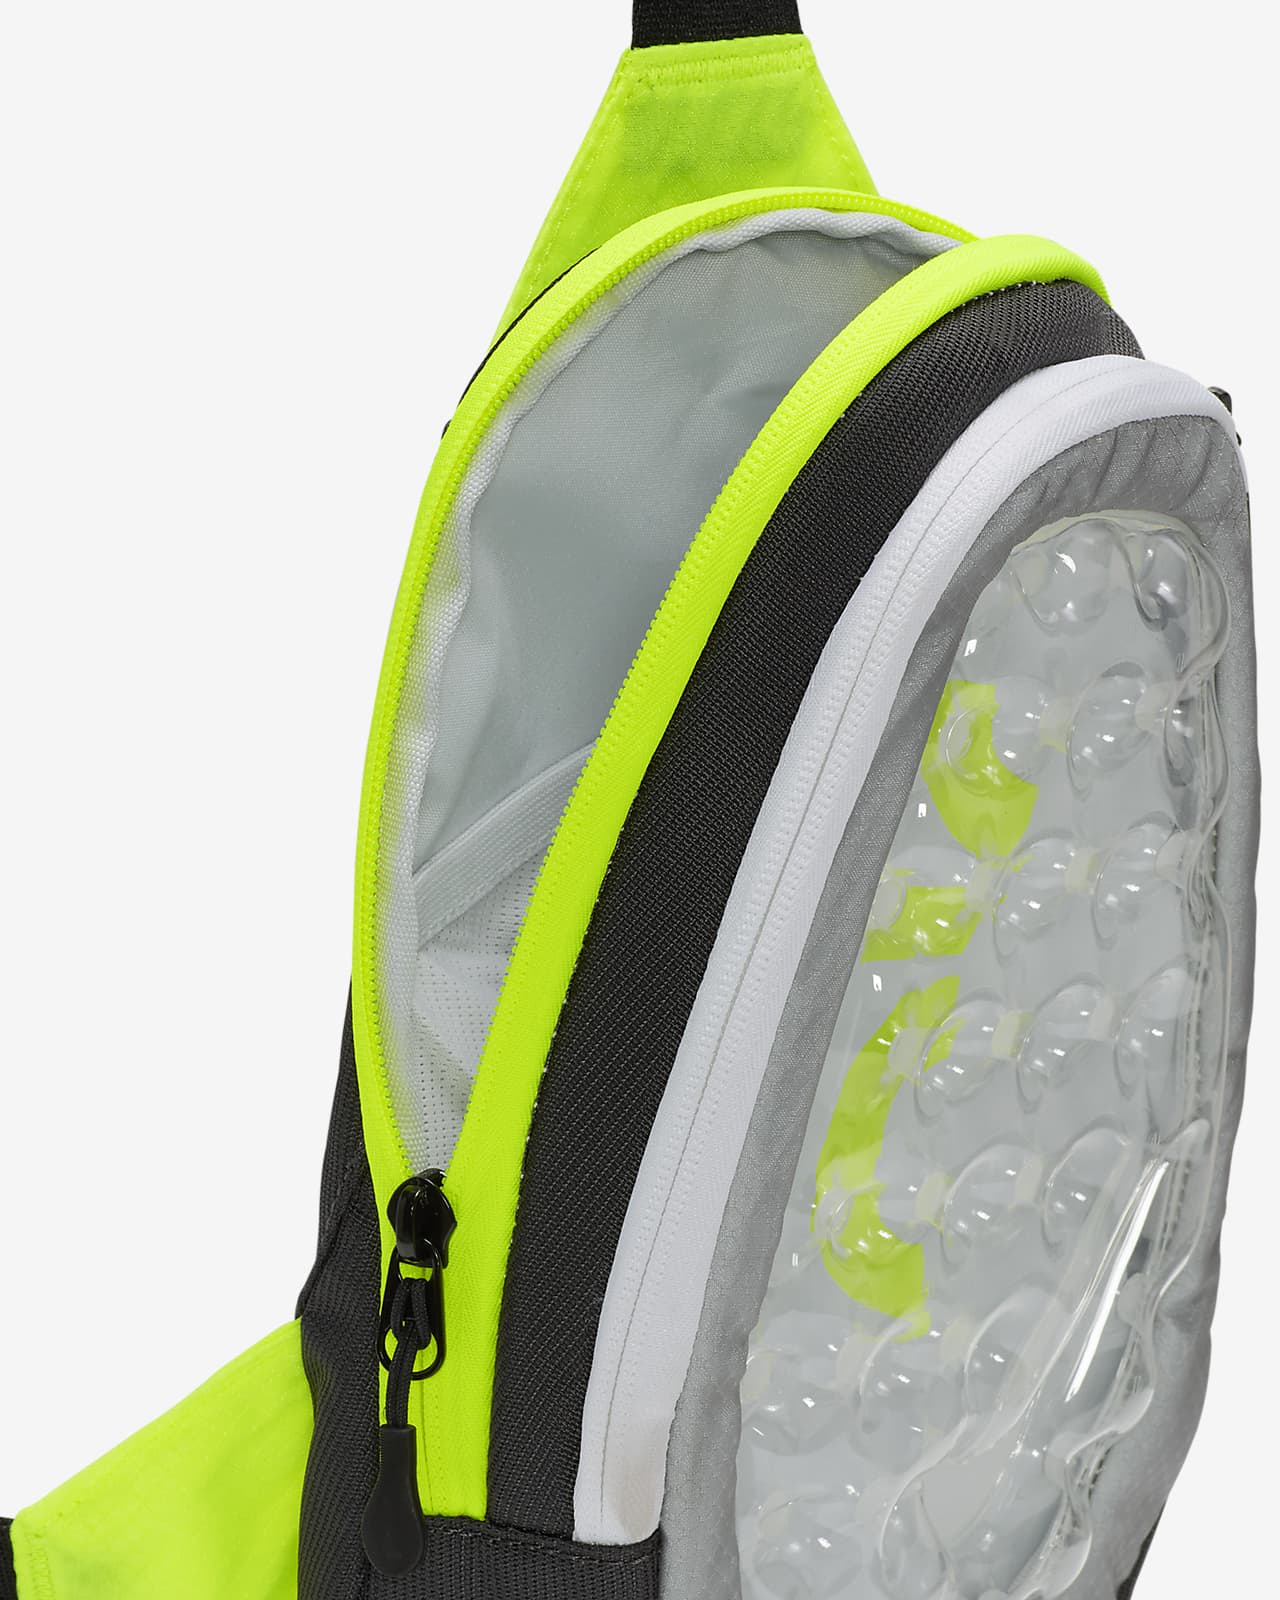 Nike Air Max Cross-body Bag (4L). Nike CA